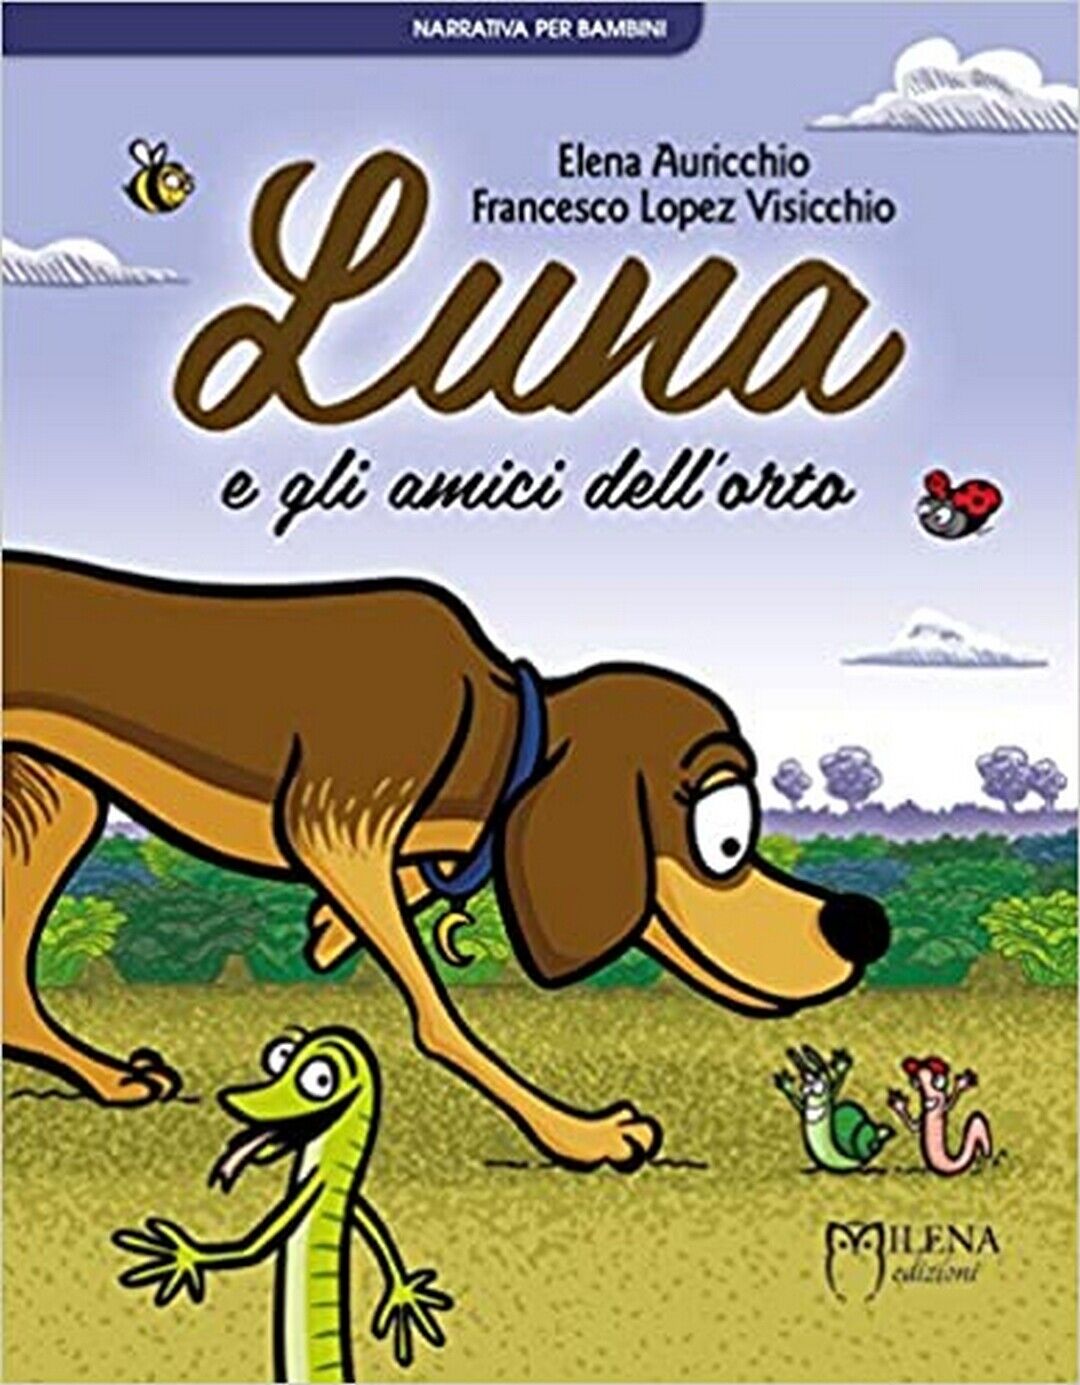 Luna e gli amici delL'orto  di Elena Auricchio, Francesco Lopez Visicchio,  Mile